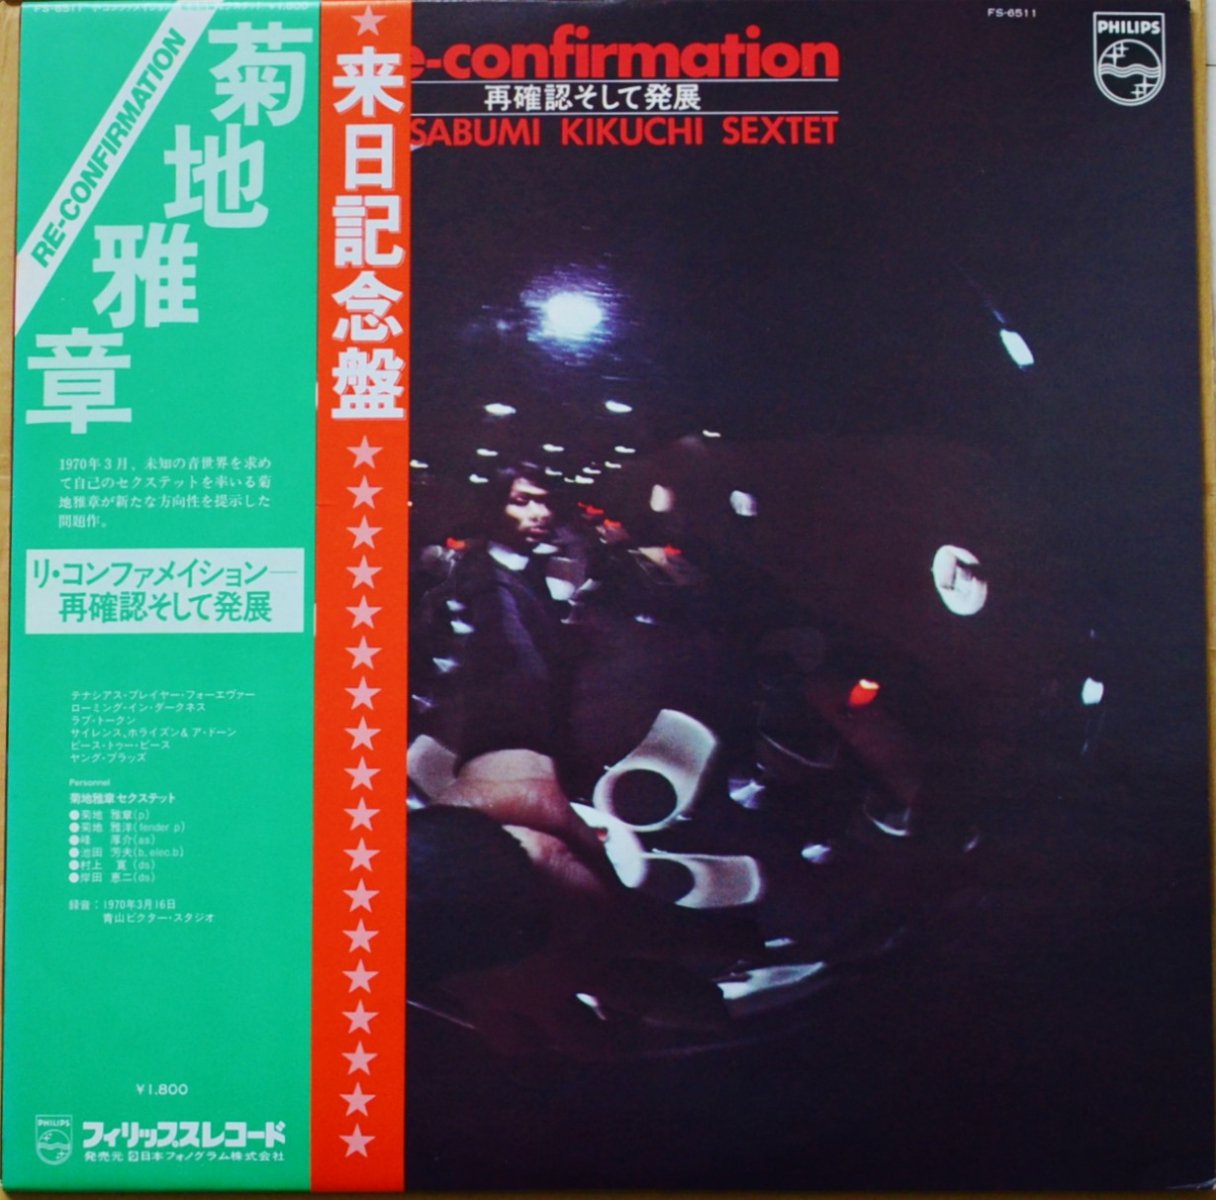 菊地雅章セクステット MASABUMI KIKUCHI SEXTET / リ・コンファメイション RE-CONFIRMATION (LP)